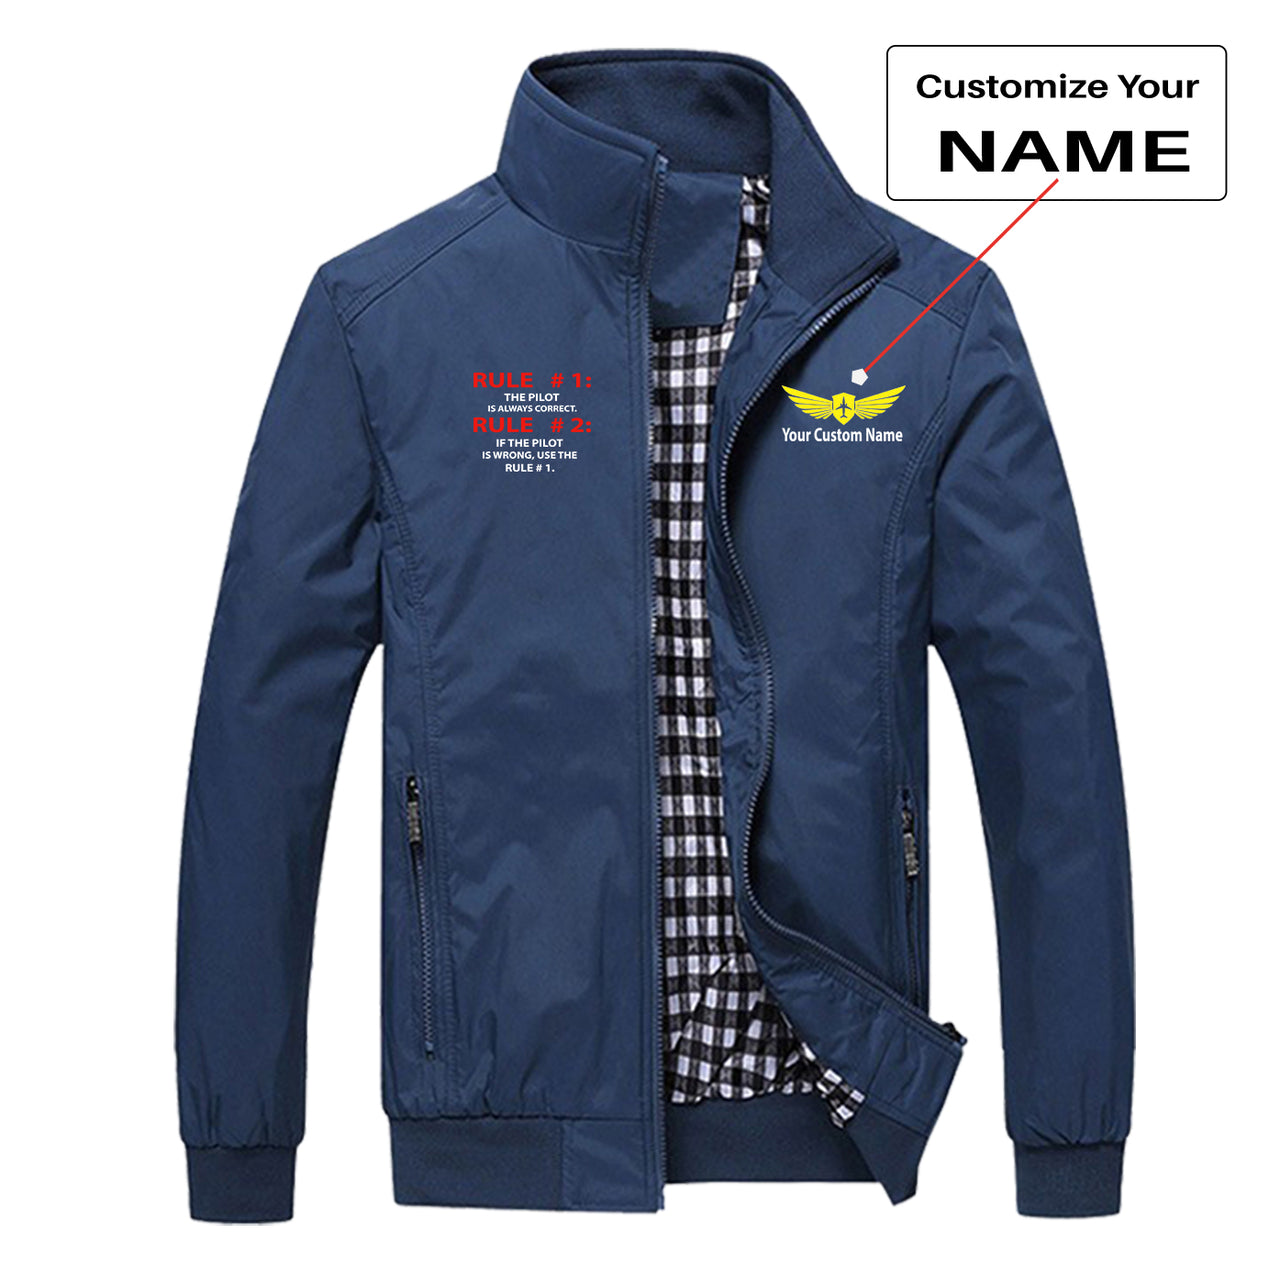 Rule 1 - Pilot is Always Correct Designed Stylish Jackets